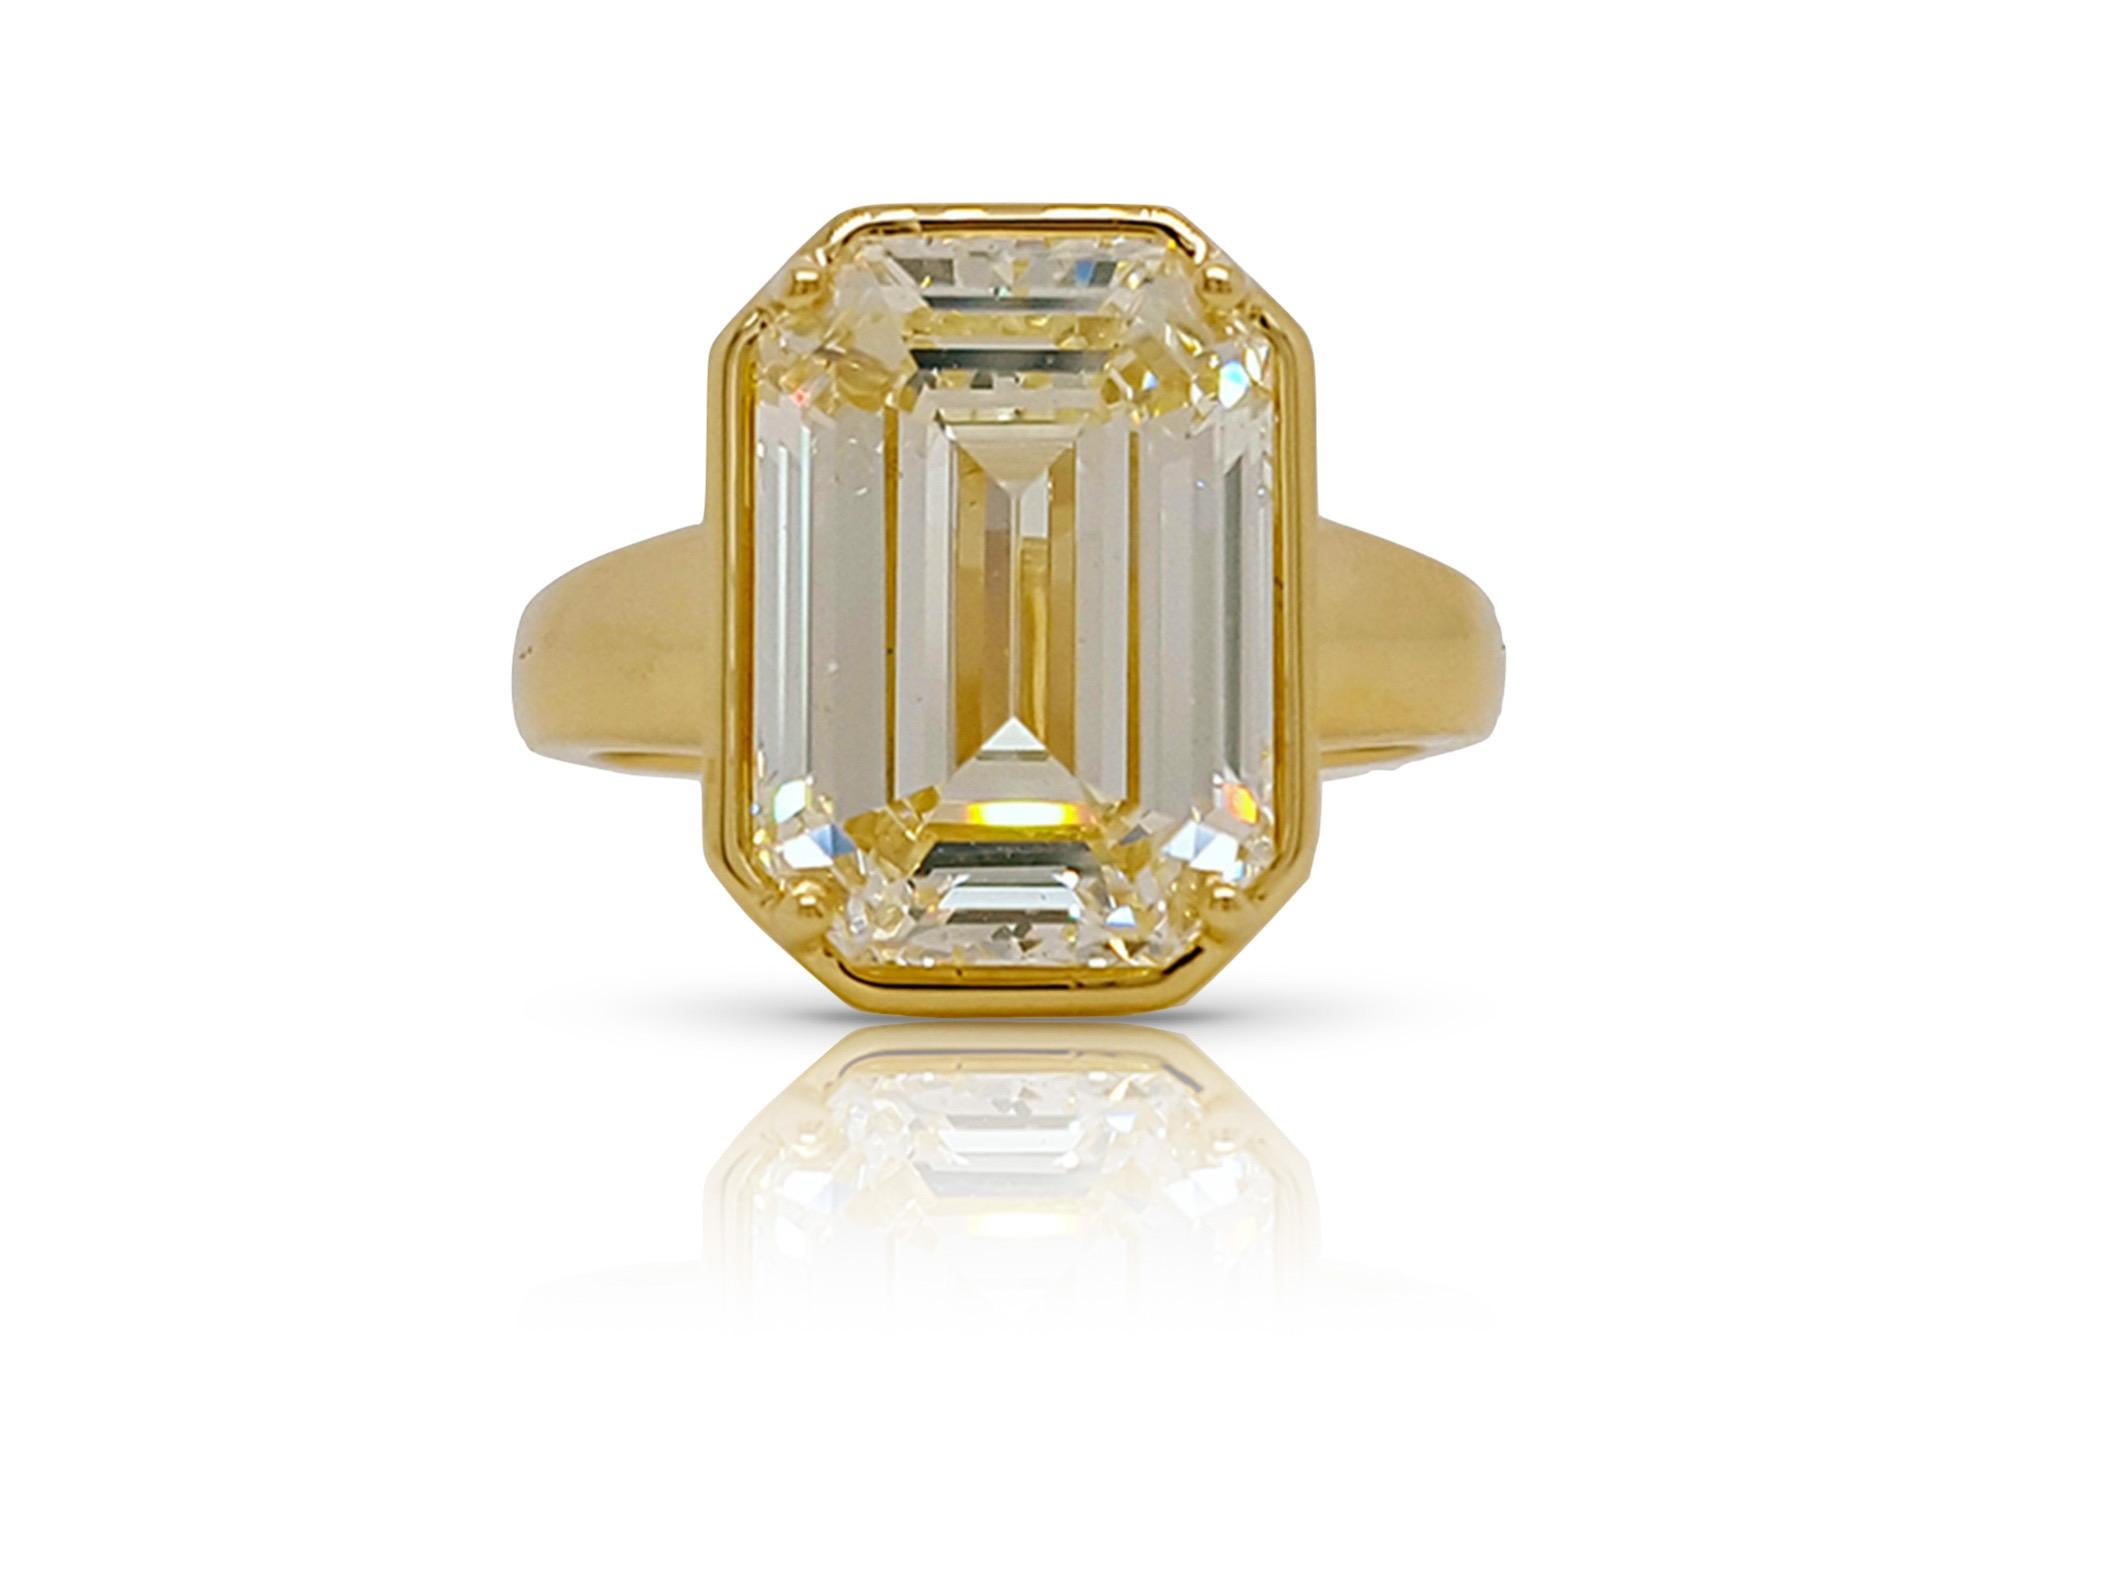 Une bague de fiançailles absolument stupéfiante mettant en valeur un diamant de 7,50 carats de taille émeraude serti dans un chaton en or 18 carats certifié par le GIA comme ayant une clarté VS2 et une couleur O-P. Le sertissage artisanal de la